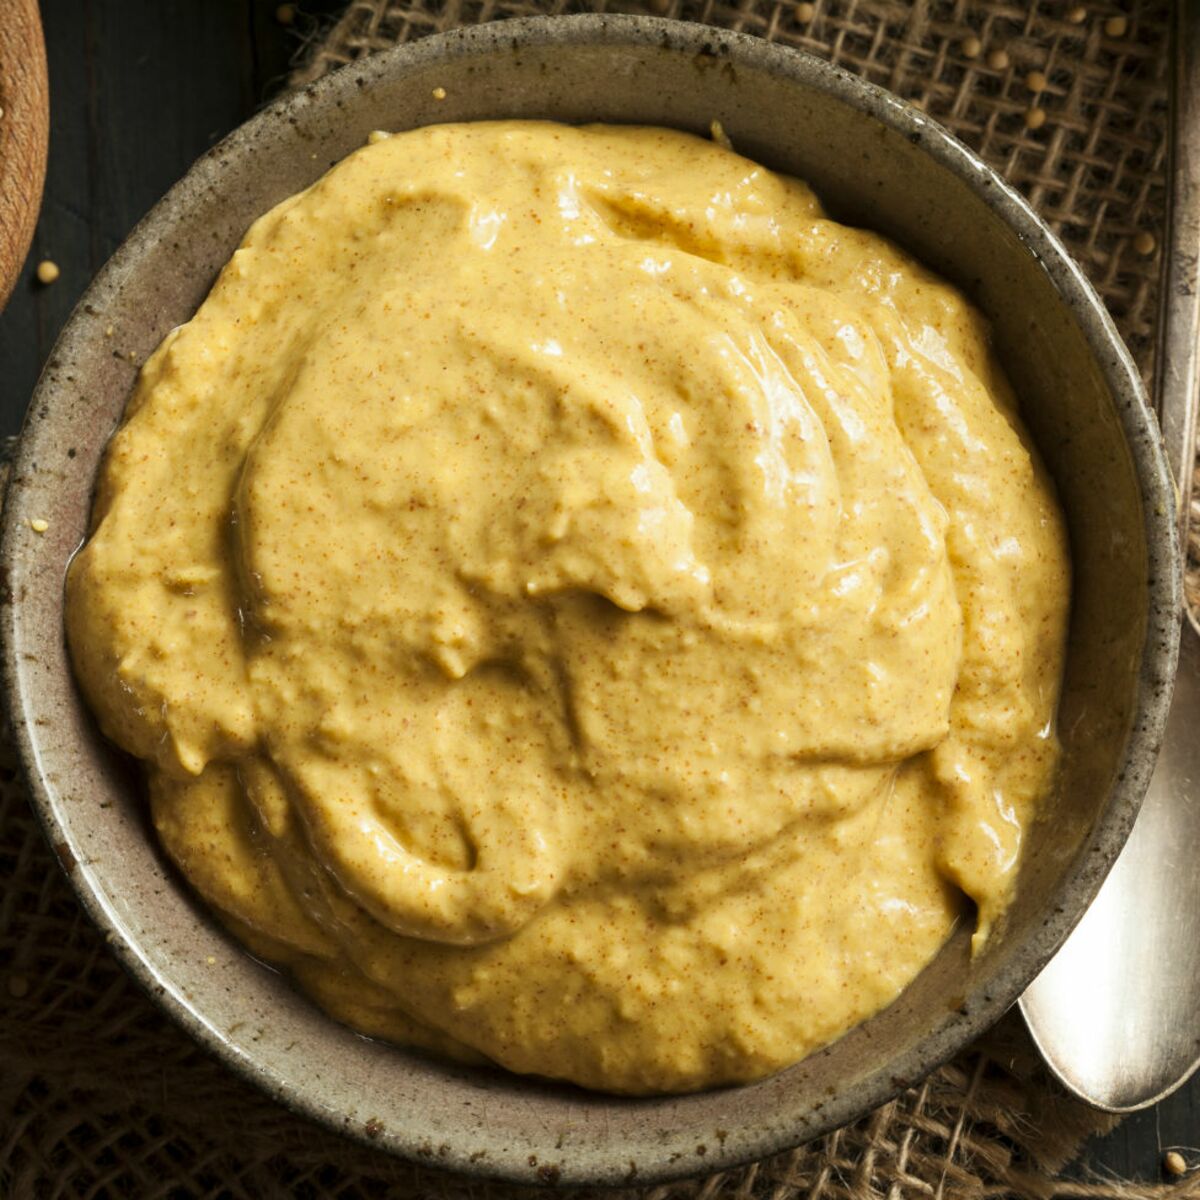 Moutarde brune - Achat, recette, bienfaits et histoire